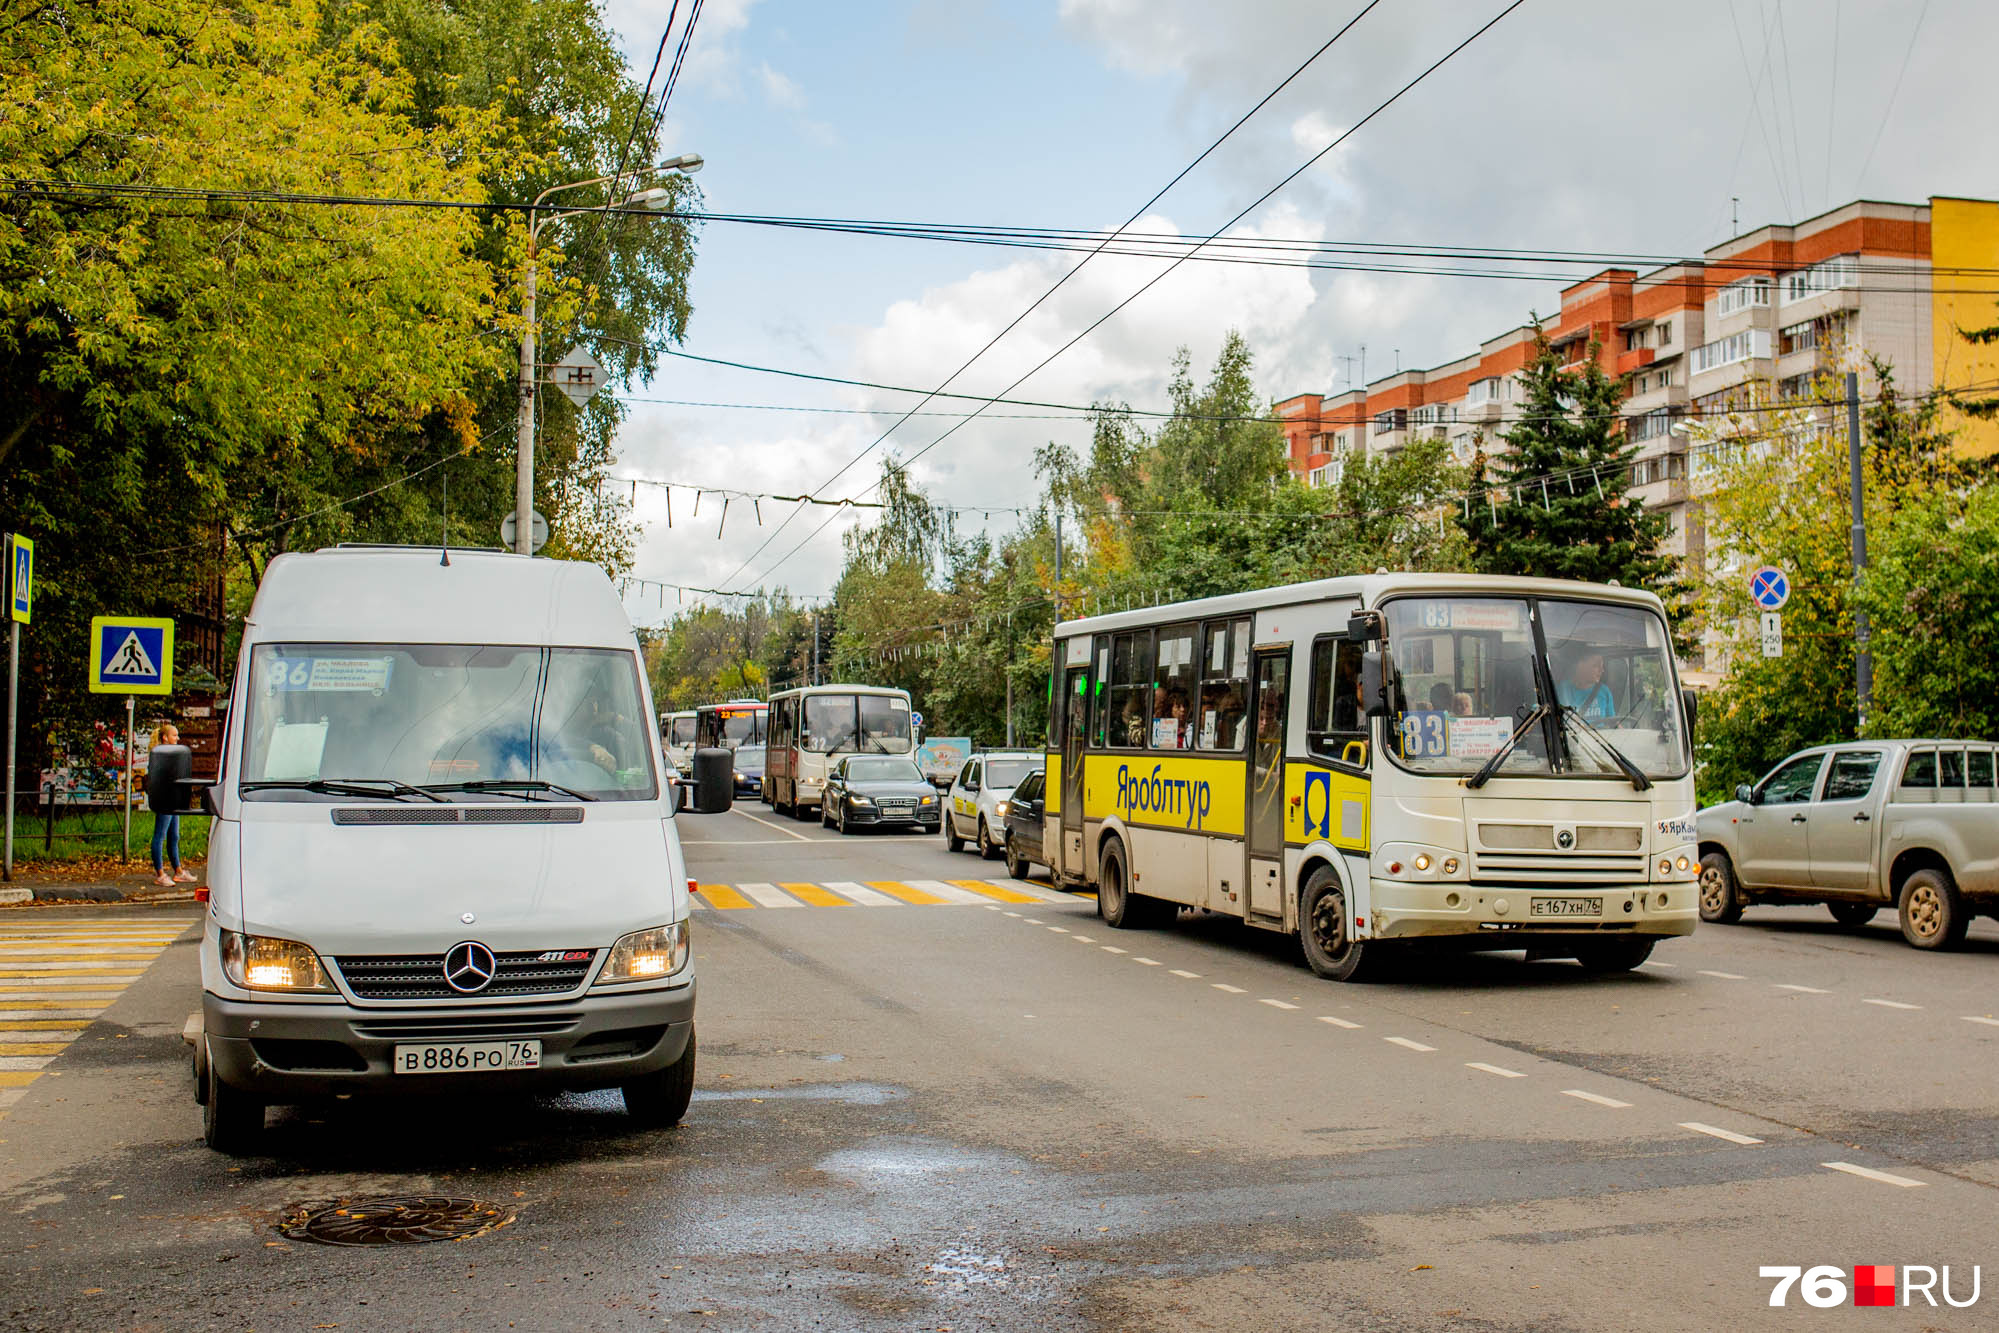 Раньше в Ярославле маршрутки были самым распространенным видом общественного транспорта